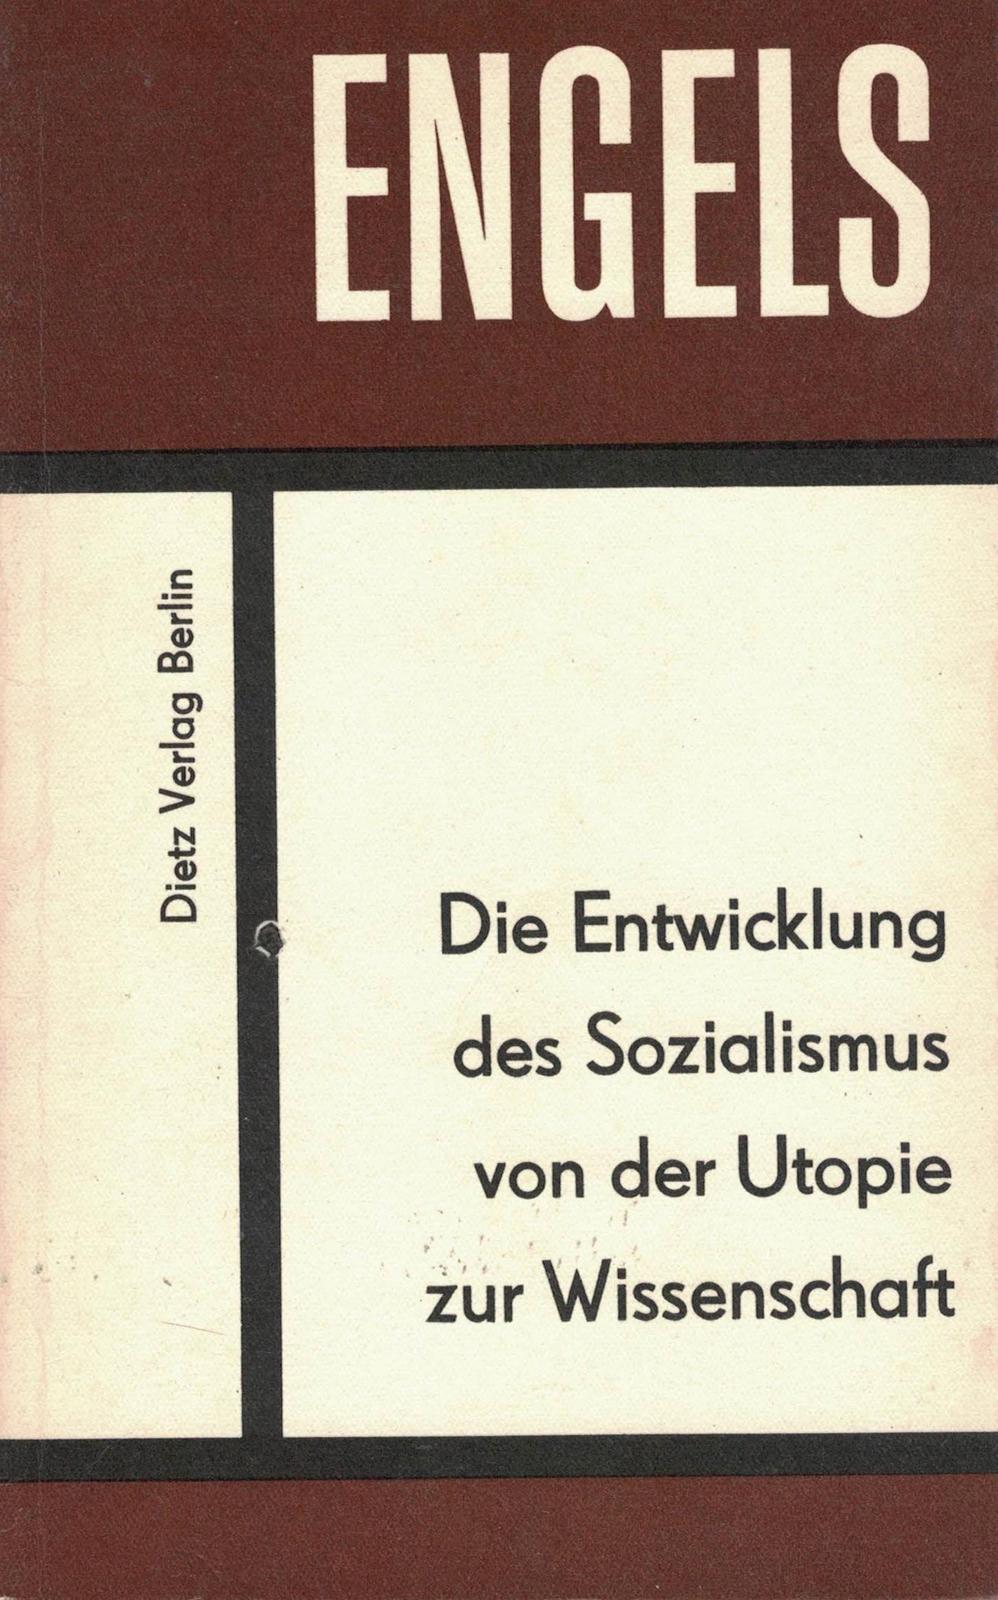 Die Entwicklung des Sozialismus von der Utopie zur Wissenschaft (German language, 1969, Karl Dietz Verlag Berlin)